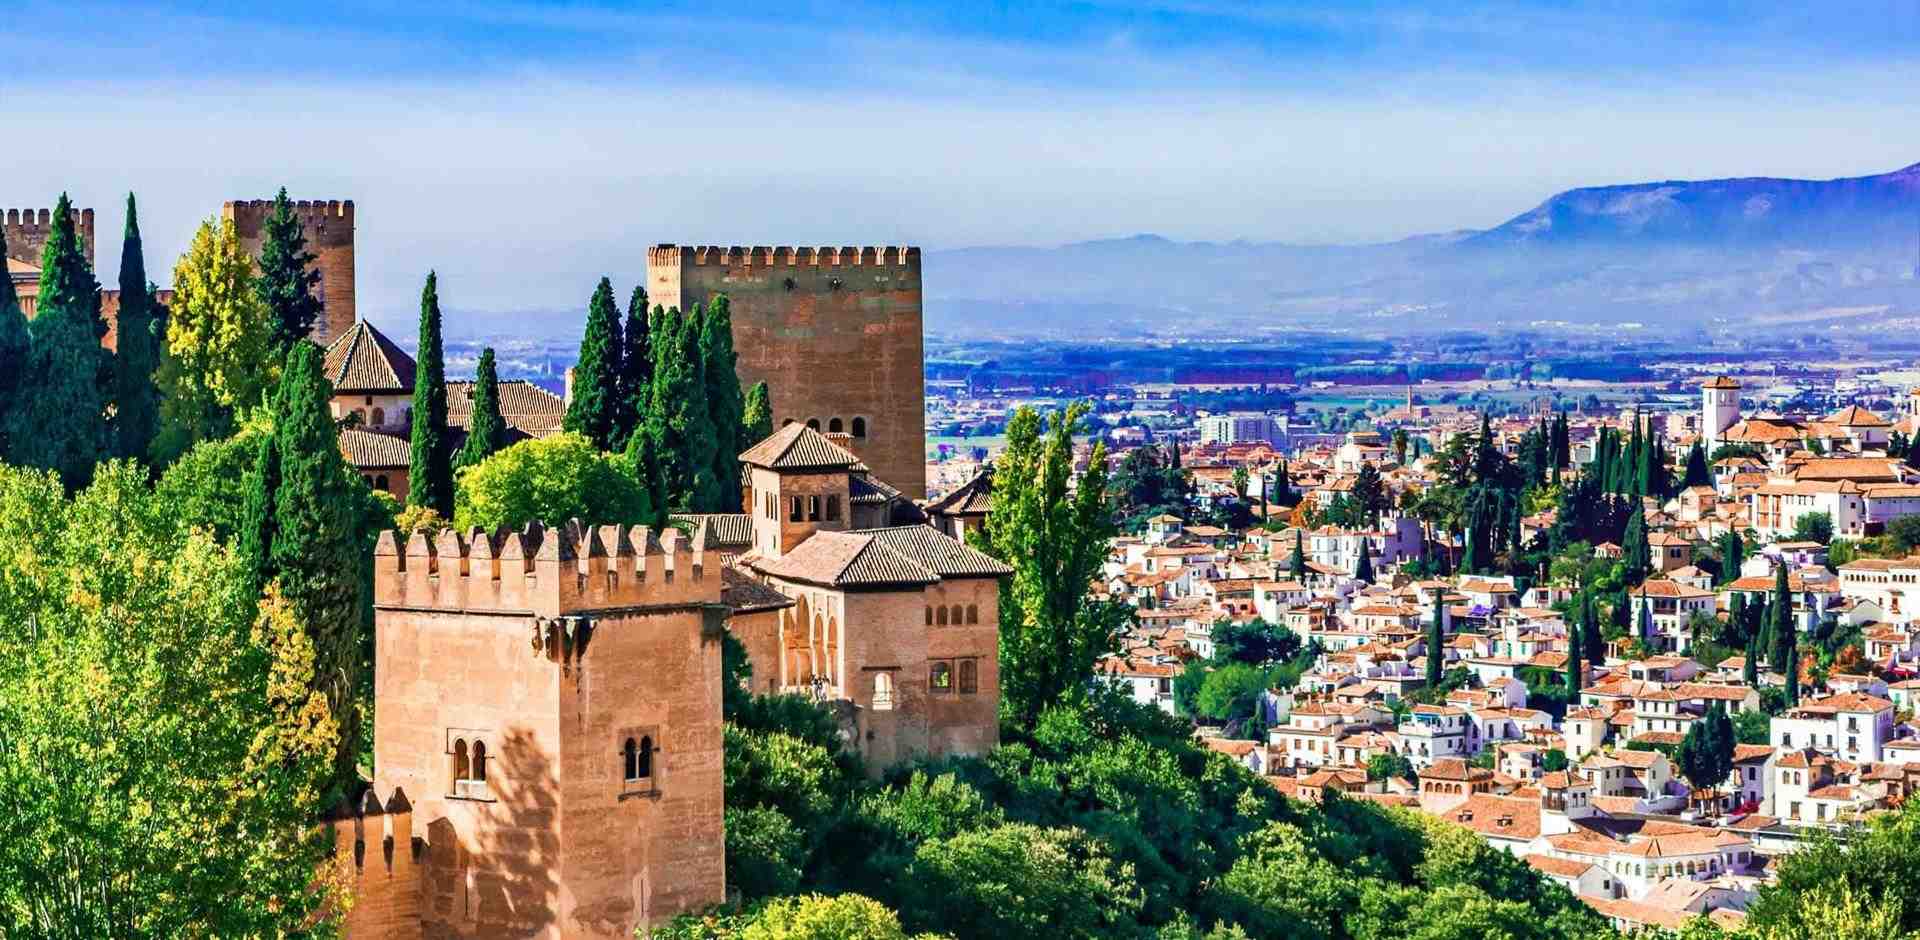 Qu'est-ce que l'Alhambra de Grenade et qui l'a construite ?